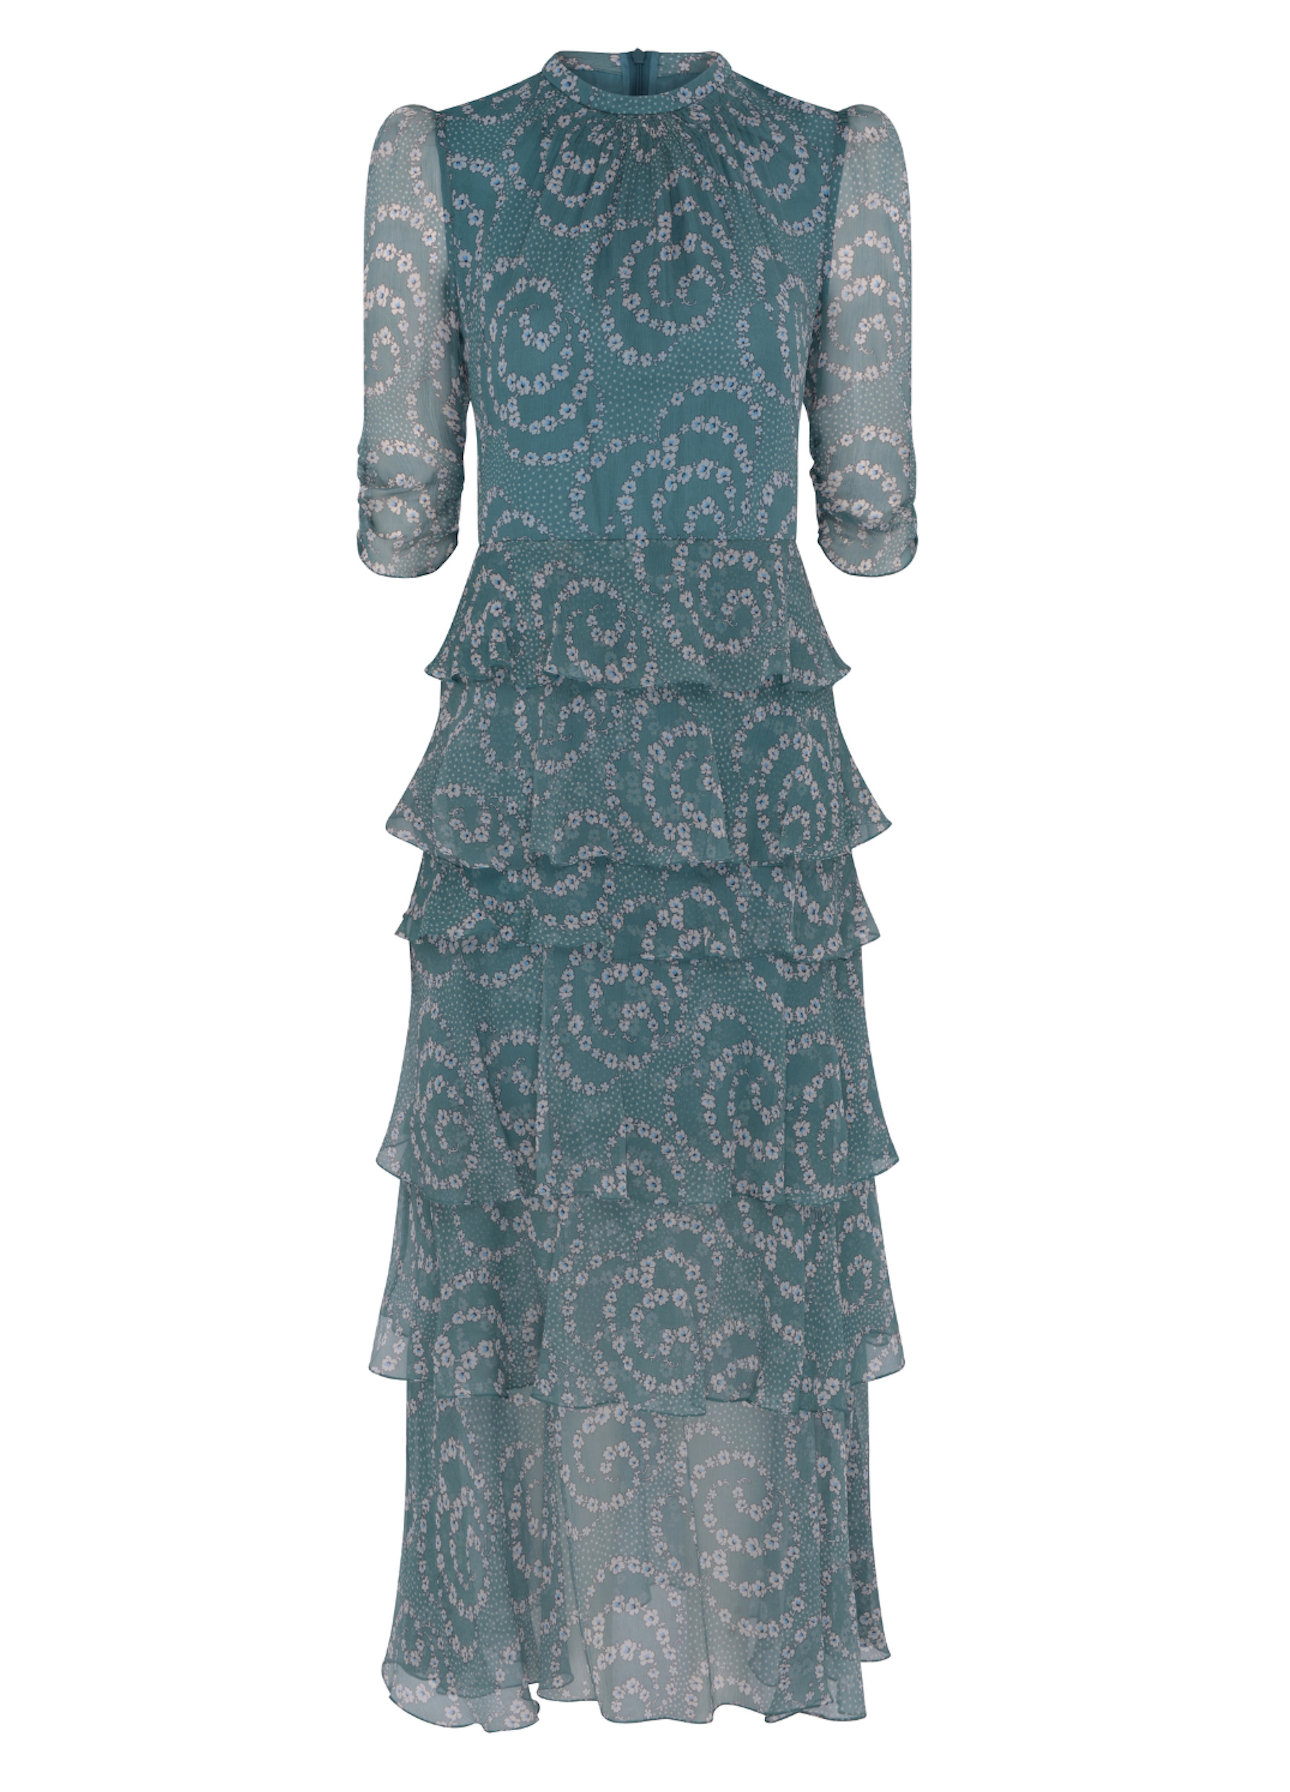 Hania Silk Dress - Daisy Chain Emerald